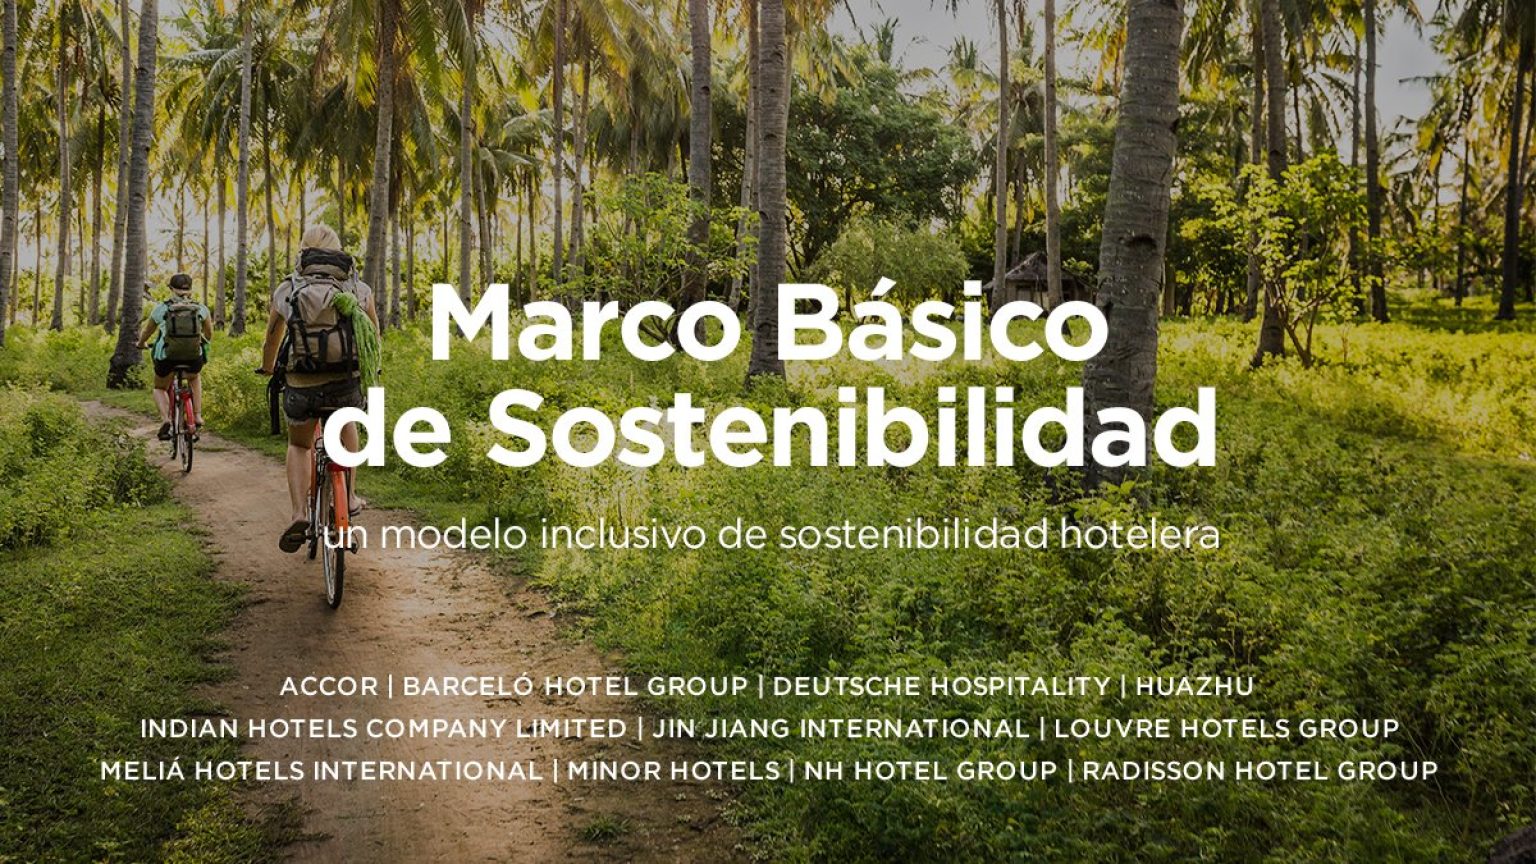 Barceló Hotel Group, Meliá Hotels International y NH Hotel Group, entre los hoteles que construyen un marco de sostenibilidad inclusiva accesible a todos los hoteles del mundo